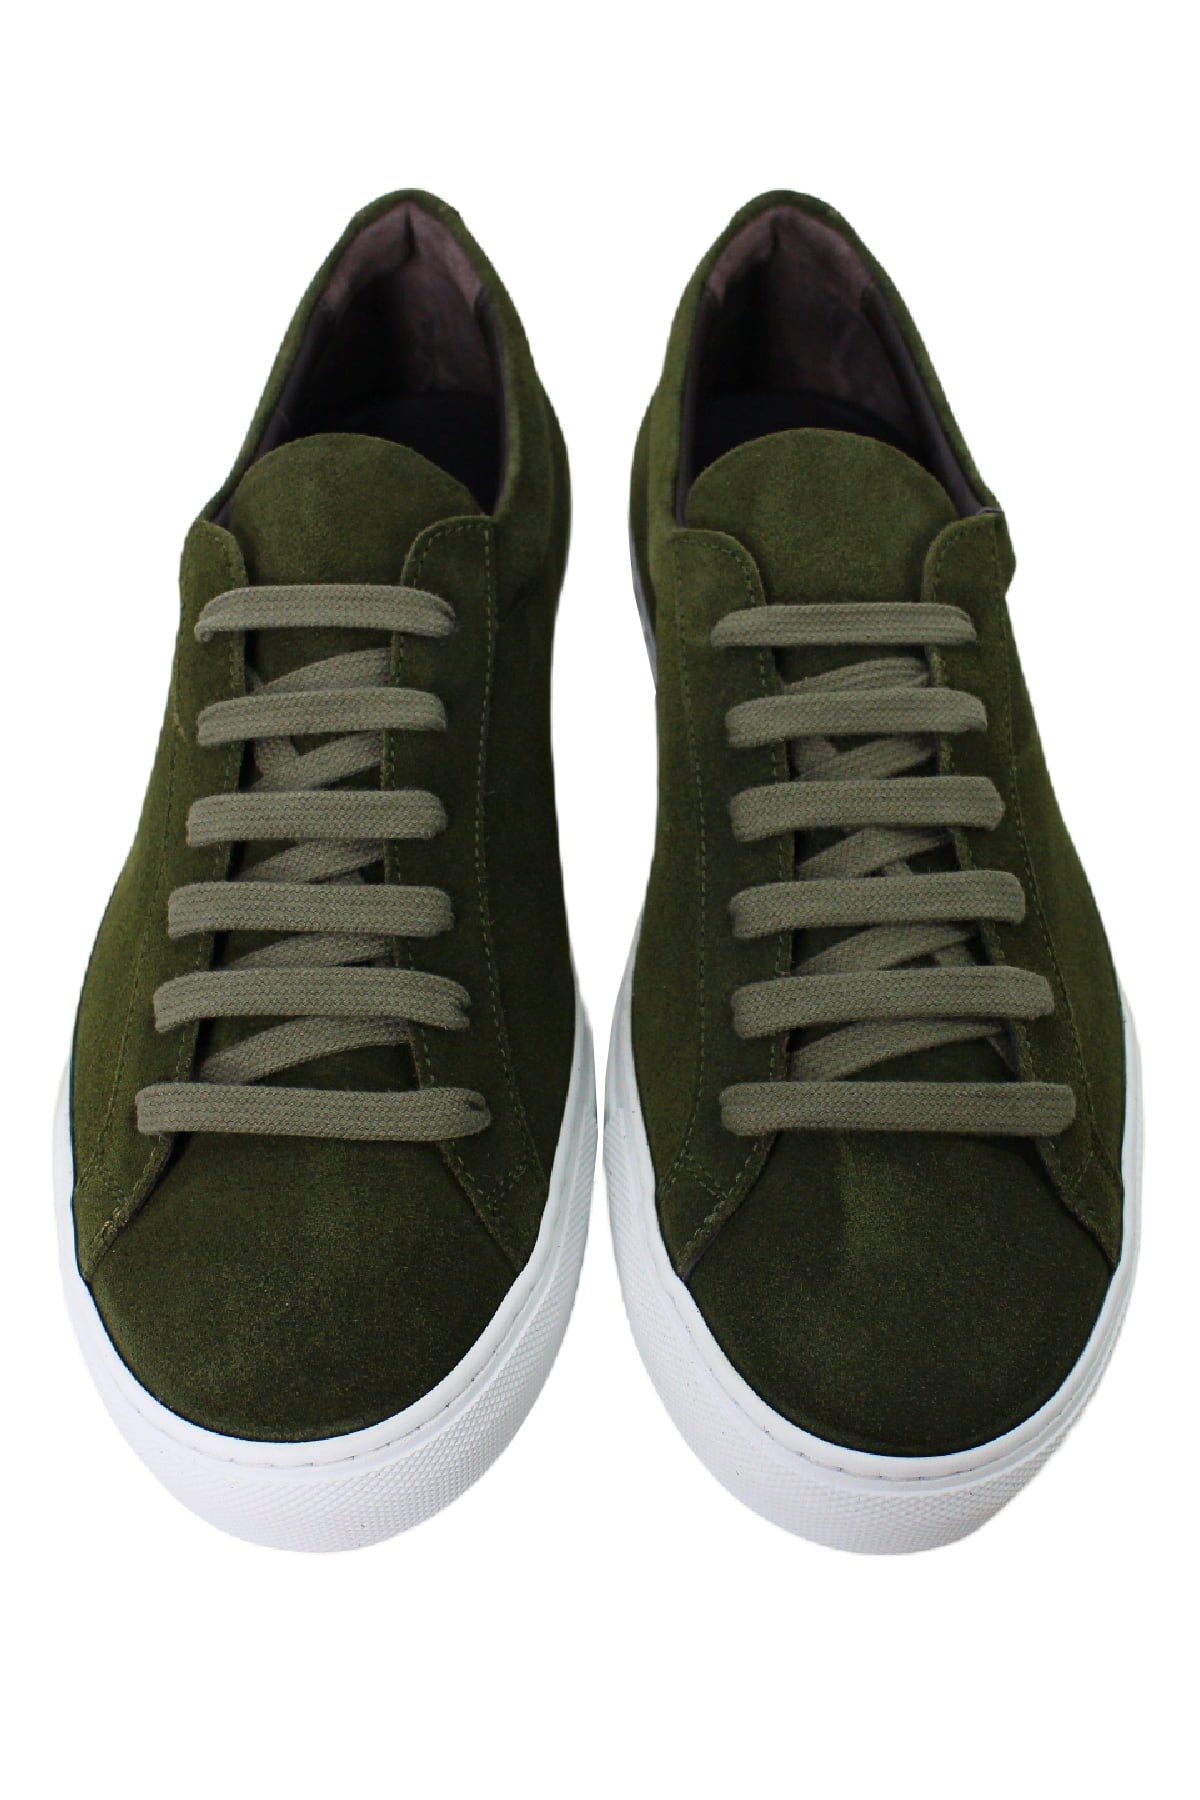 Sneakers uomo verde militare in camoscio con suola in gomma bianca made in italy